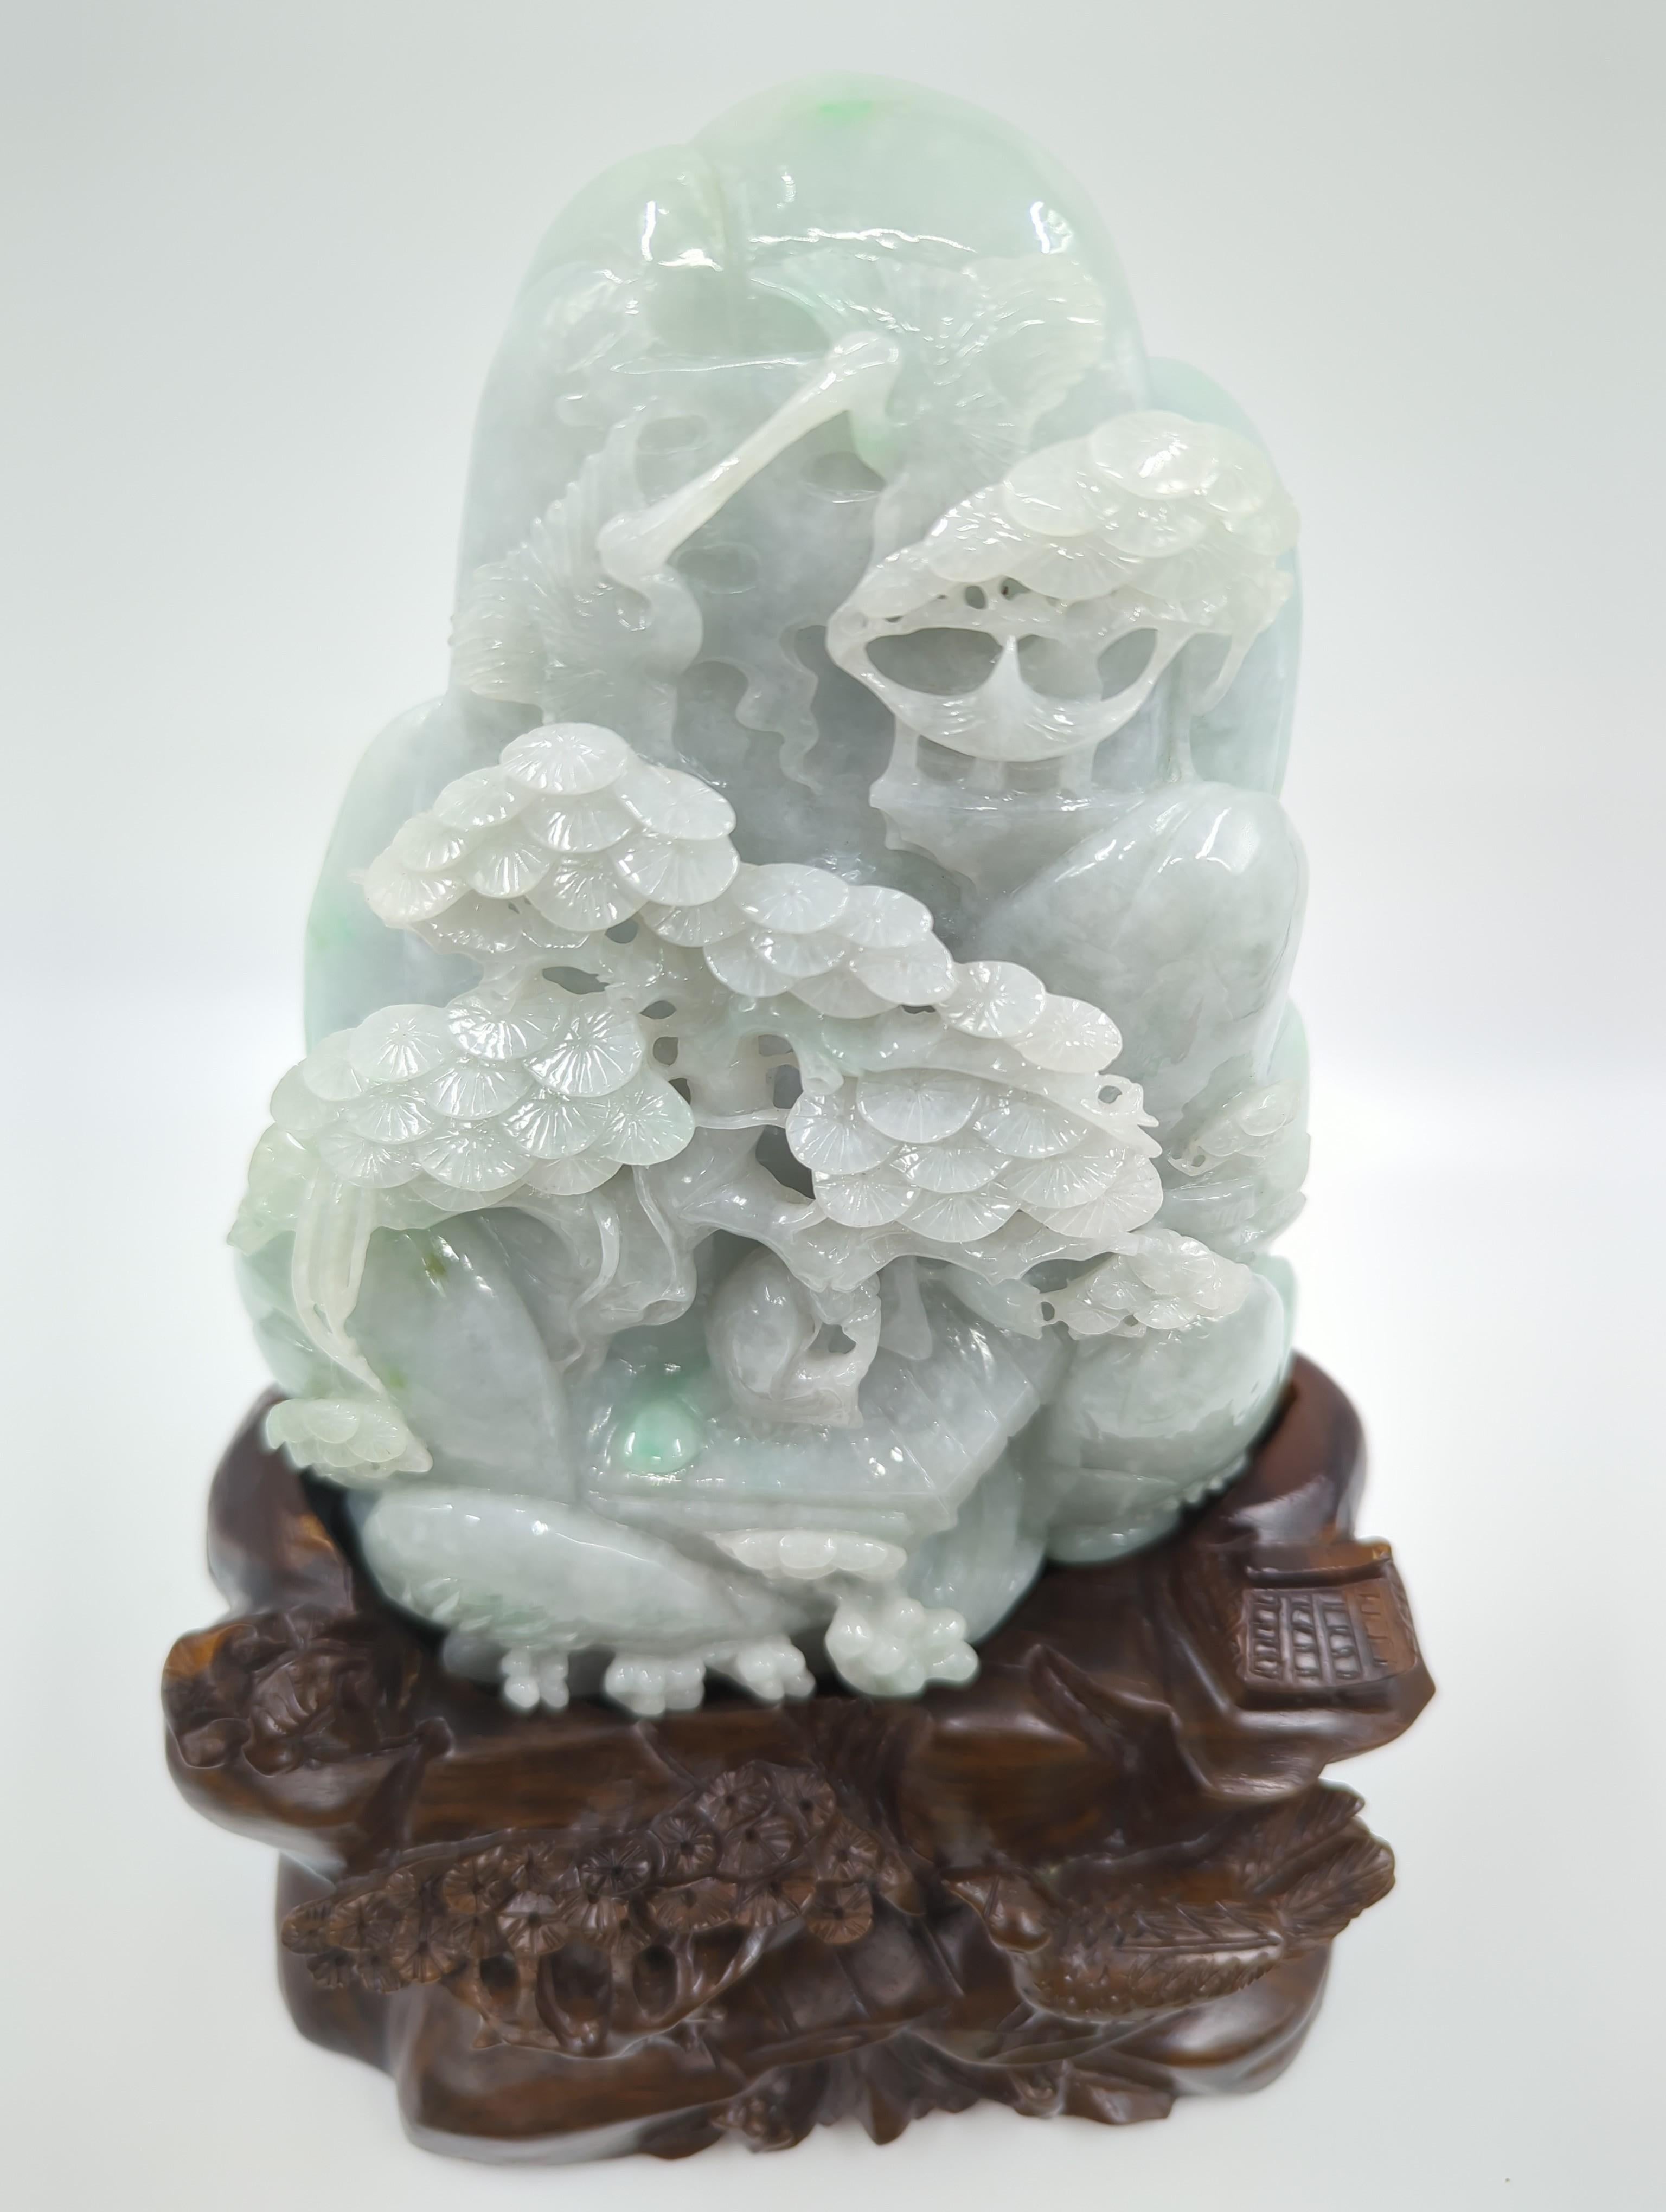 Dieser moderne chinesische Jadeit-Berg, der auf seinem Ständer beeindruckende 18 Zoll misst, ist ein bemerkenswertes Kunstwerk, das die exquisite Handwerkskunst der zeitgenössischen chinesischen Jadeschnitzerei unter Beweis stellt. Die